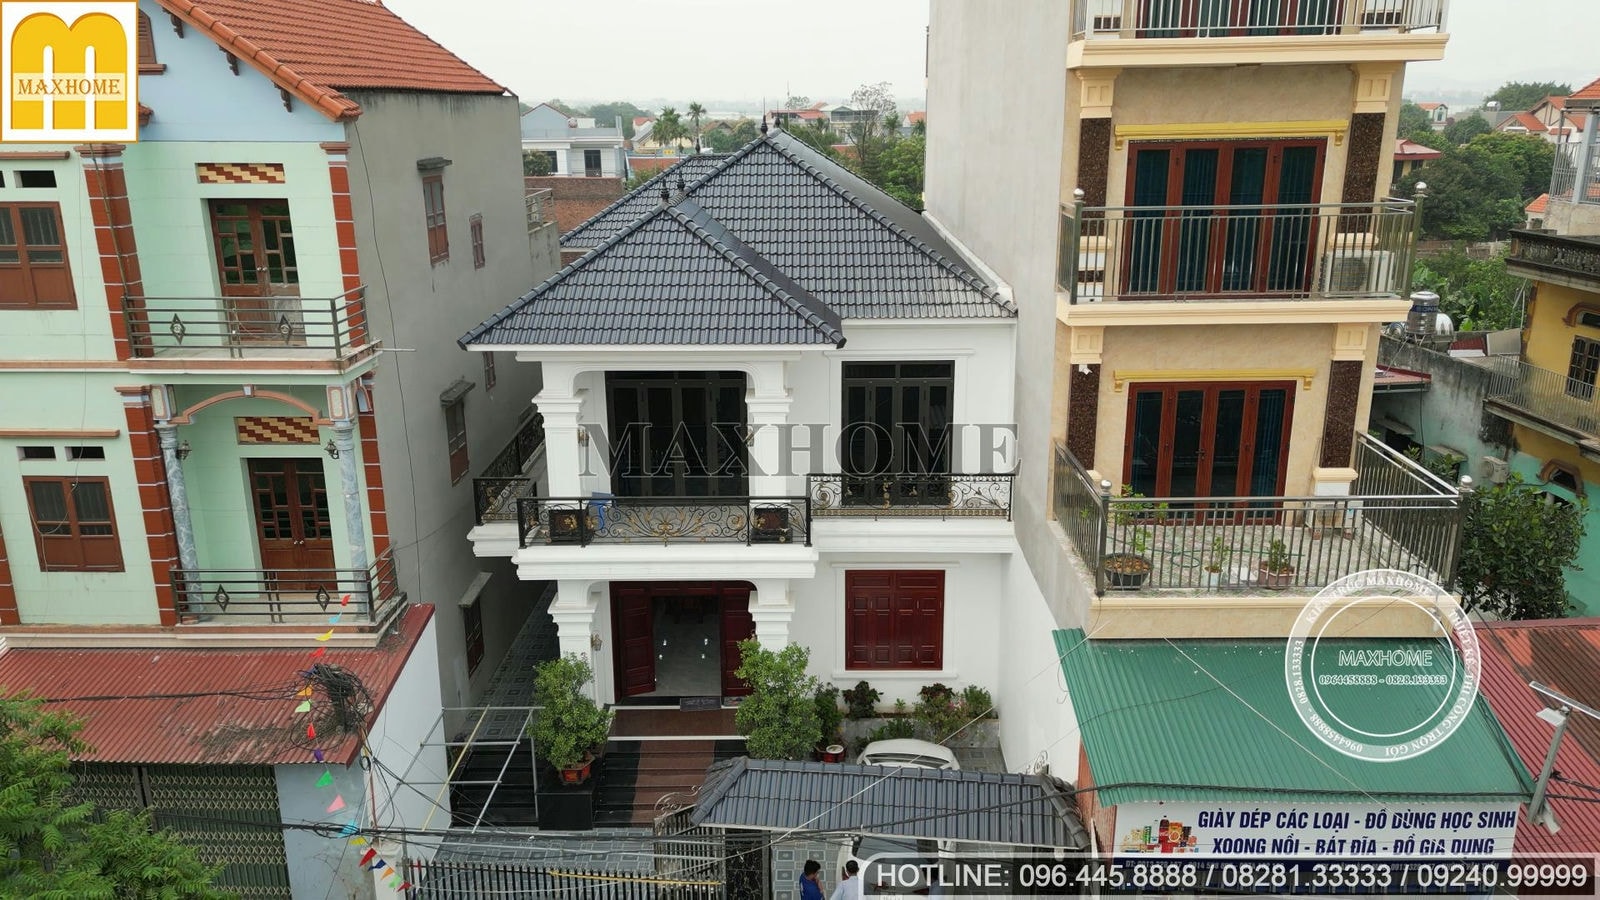 Tham quan mẫu nhà mái Nhật 2 tầng đã hoàn thiện siêu đẹp tại Bắc Ninh